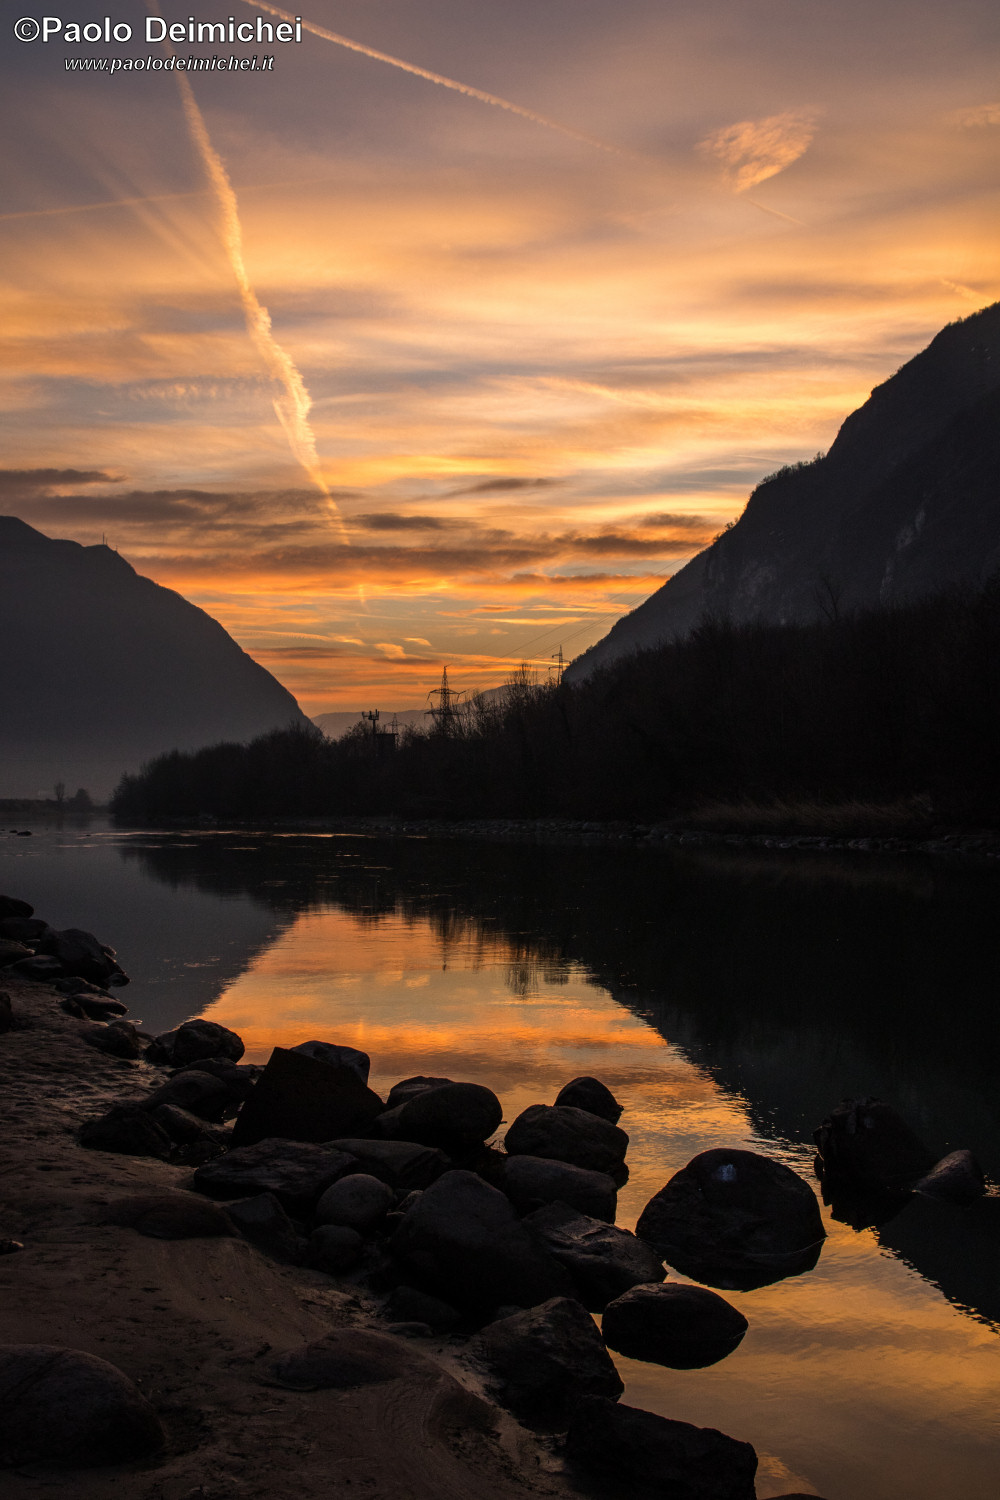 Primo tramonto dell'anno sul Fiume Adige...